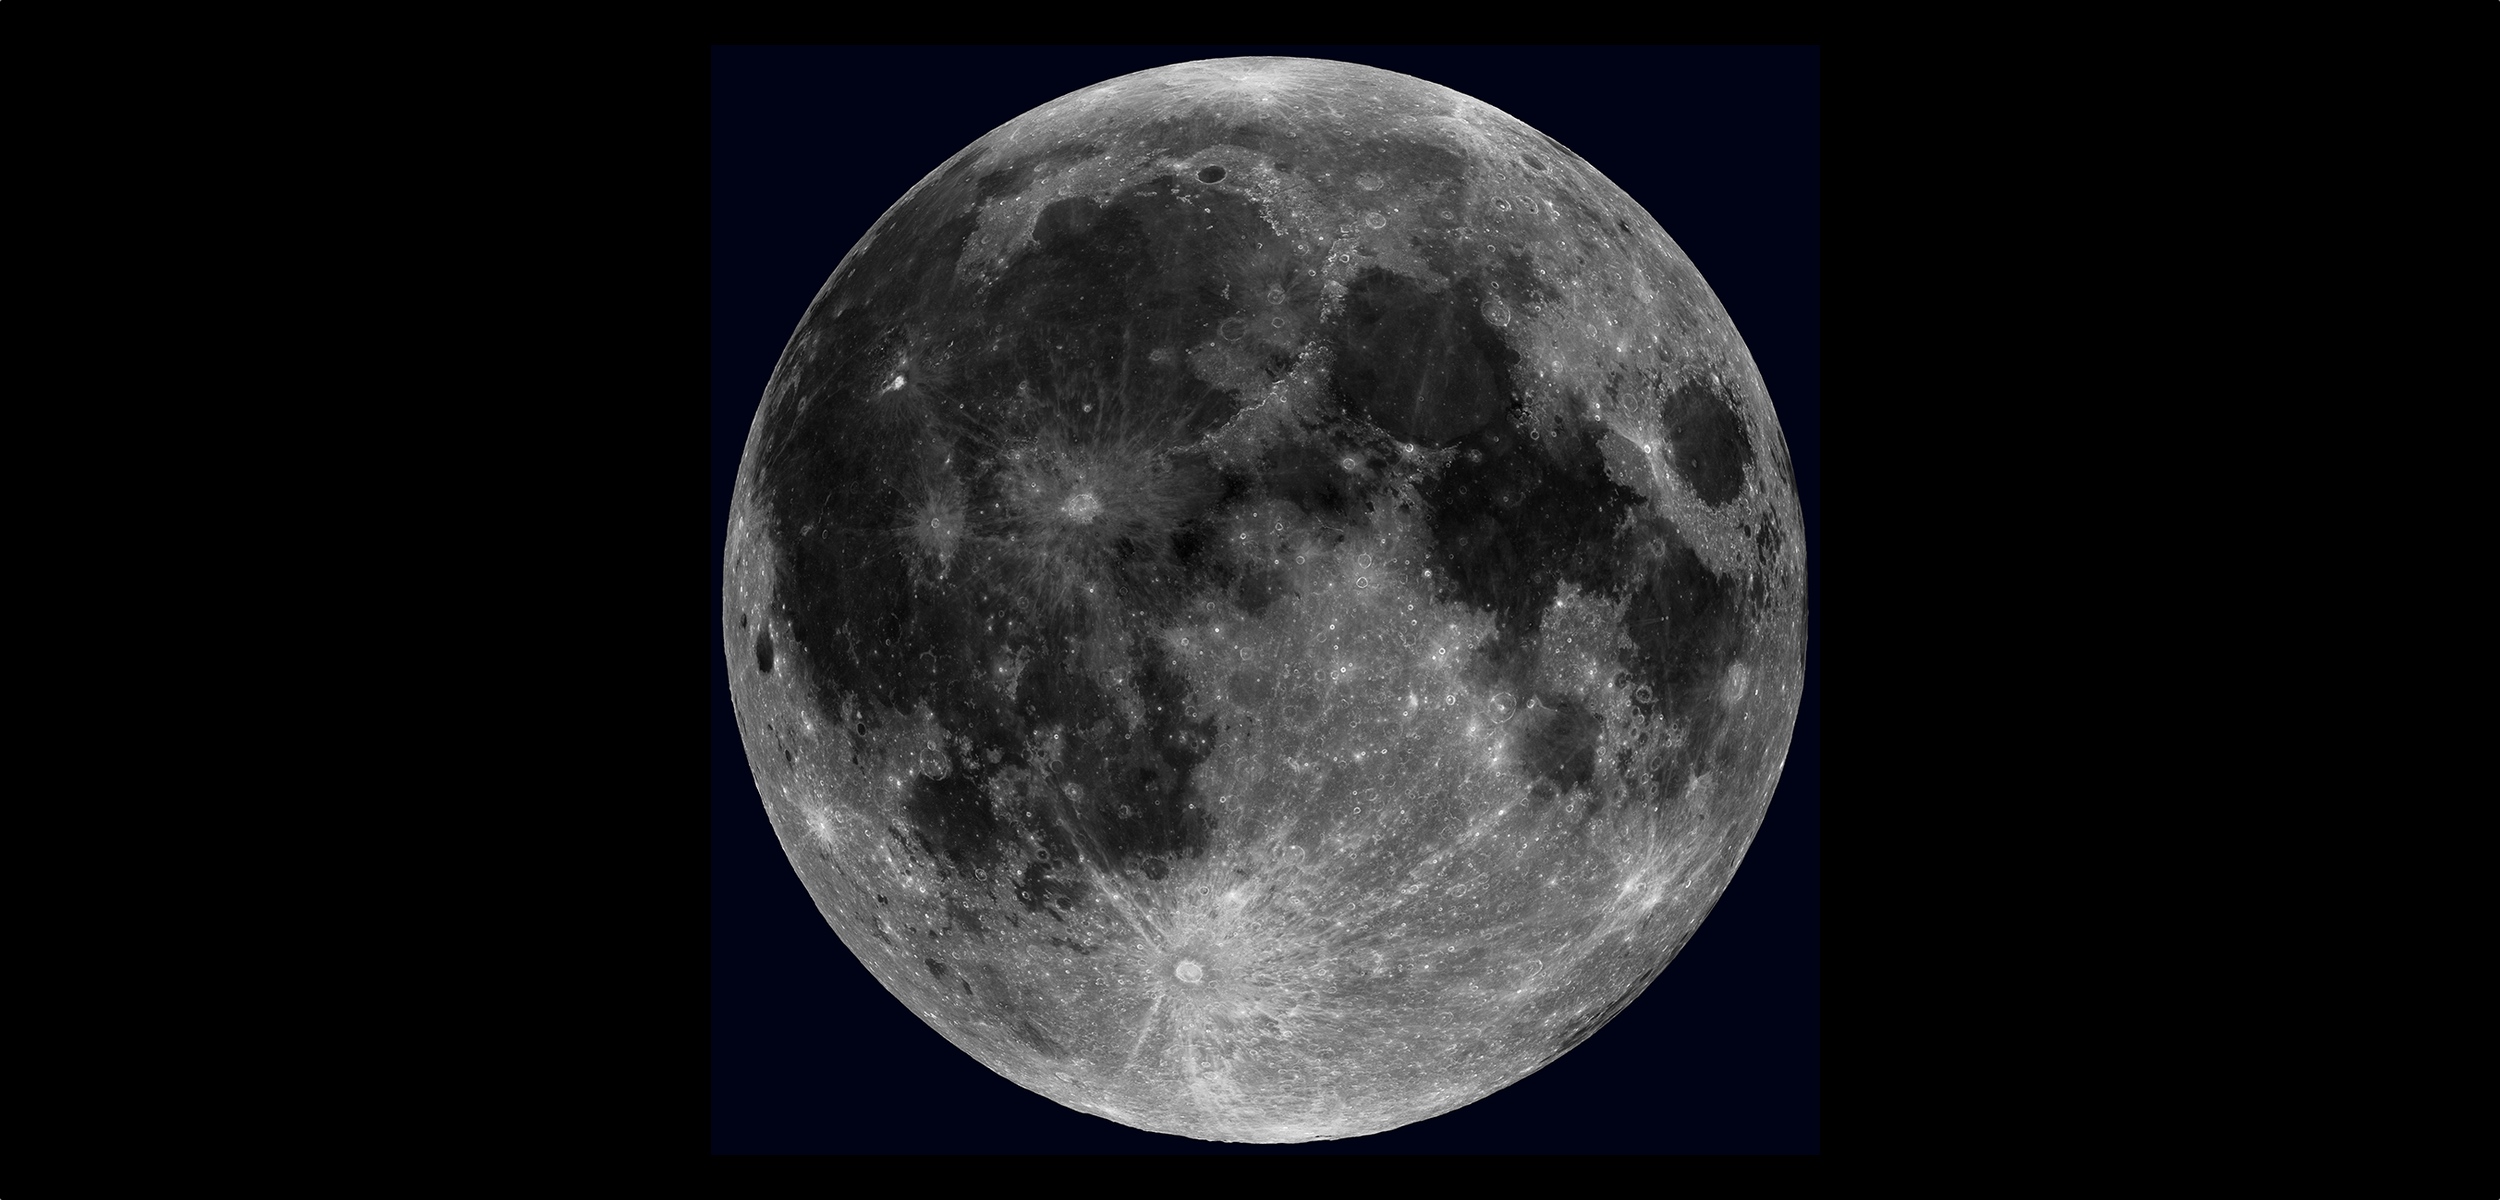 Vue globale de la Lune créée à partir des images prises par la sonde LRO. © Nasa, GSFC, Arizona State University